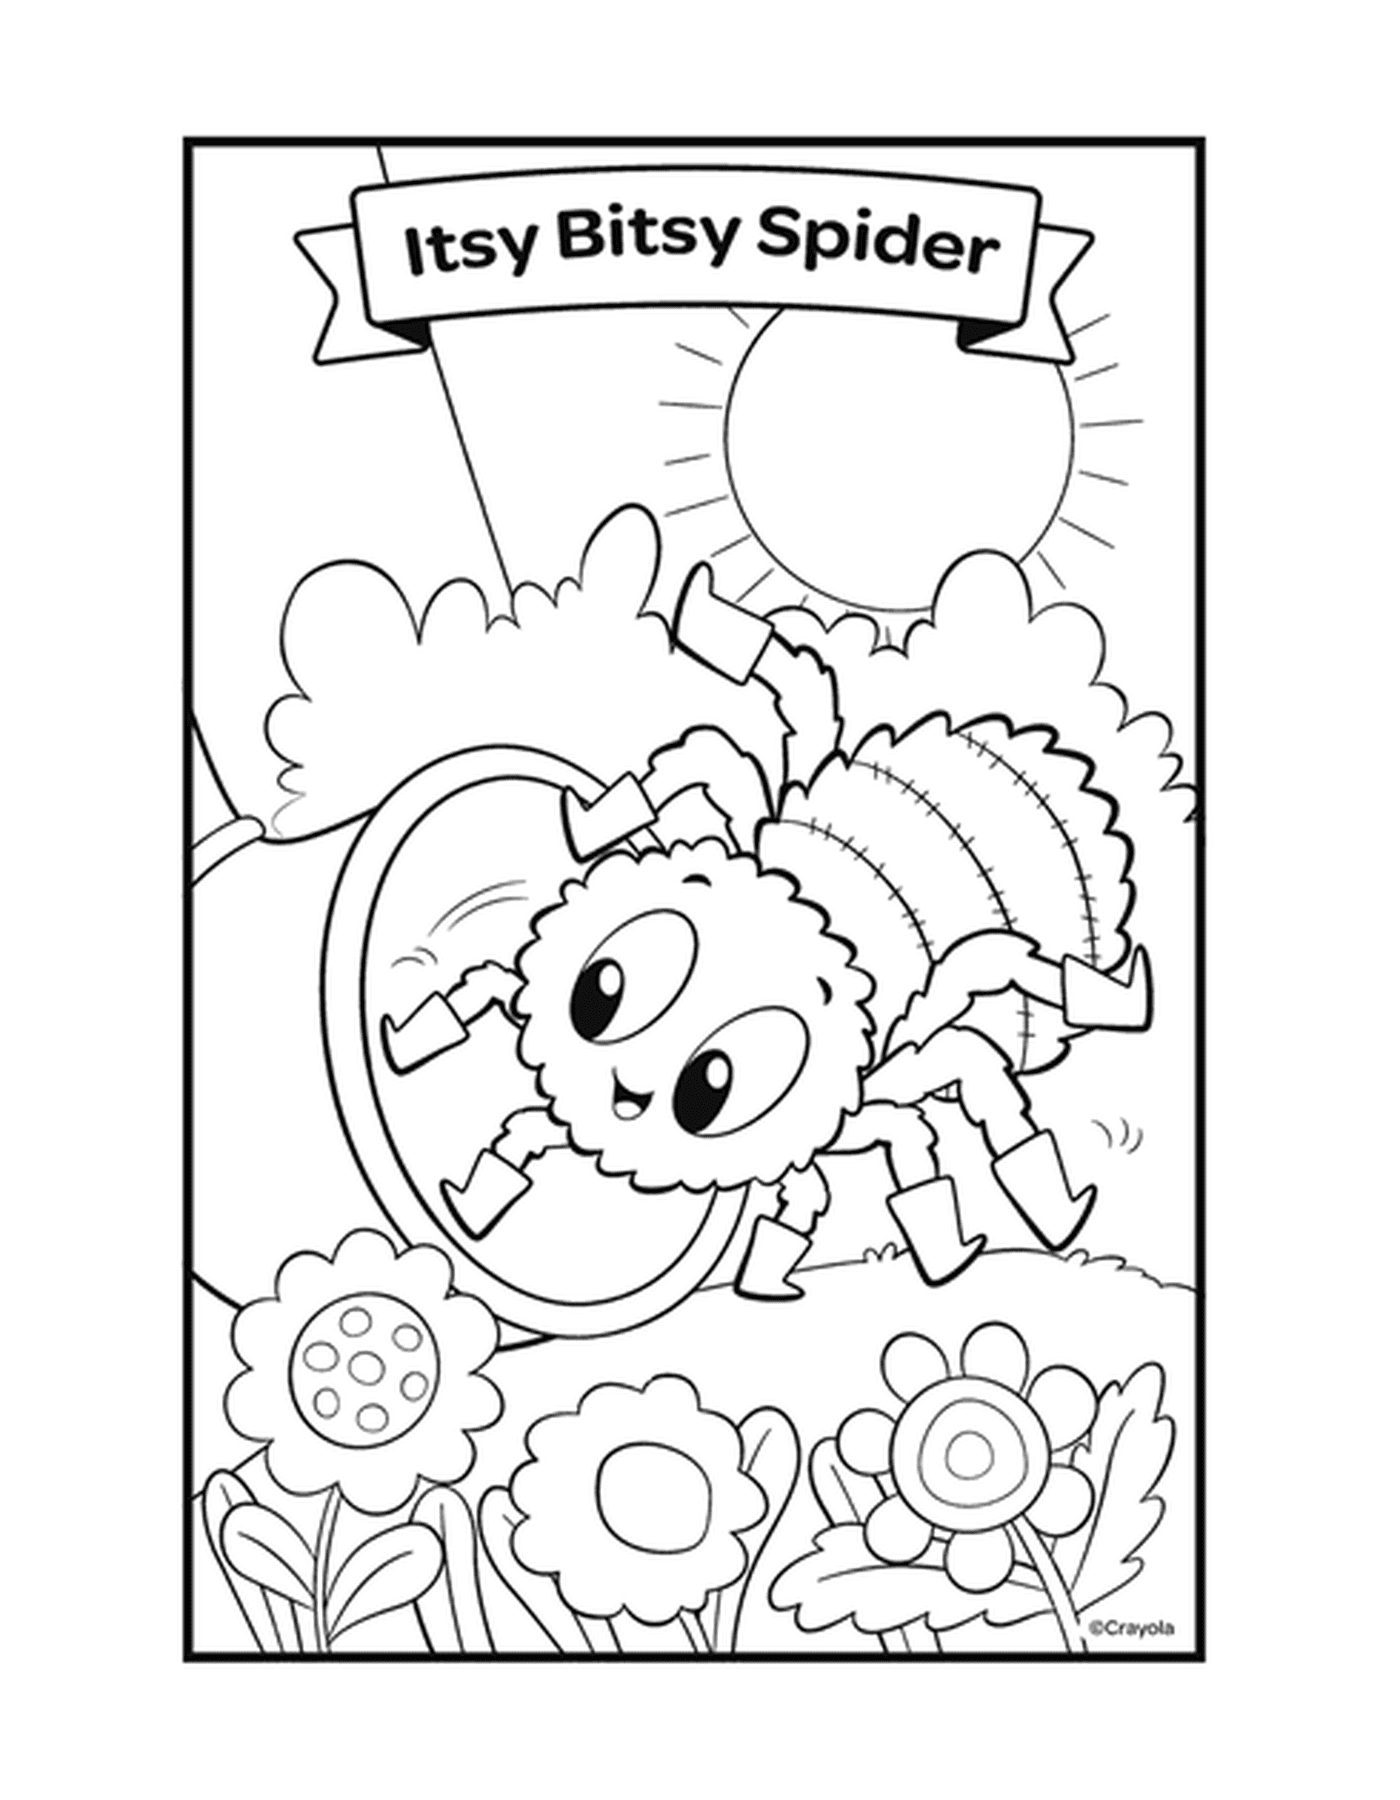   La comptine Itsy Bitsy Spider avec une araignée sur une toile 